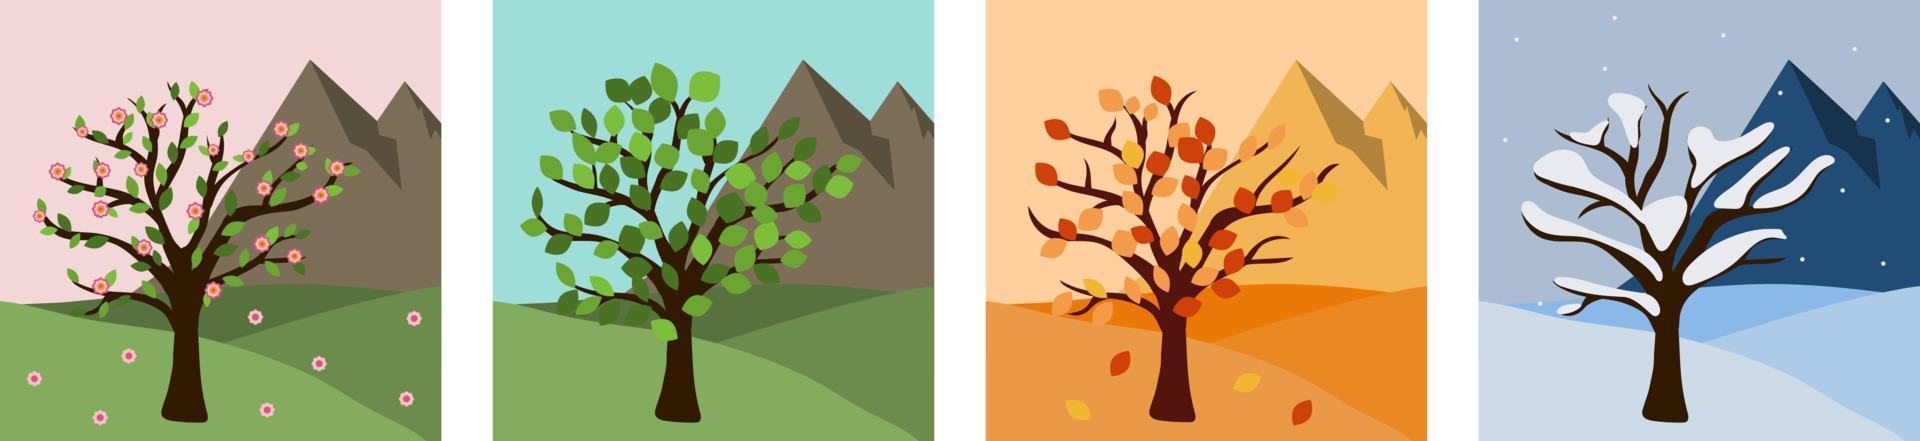 ícones da árvore da estação para o site de viagens. ilustração em vetor plana temporada design gráfico. ambiente de parque quadrado com montanhas e árvores no verão, primavera, inverno, outono, outono.